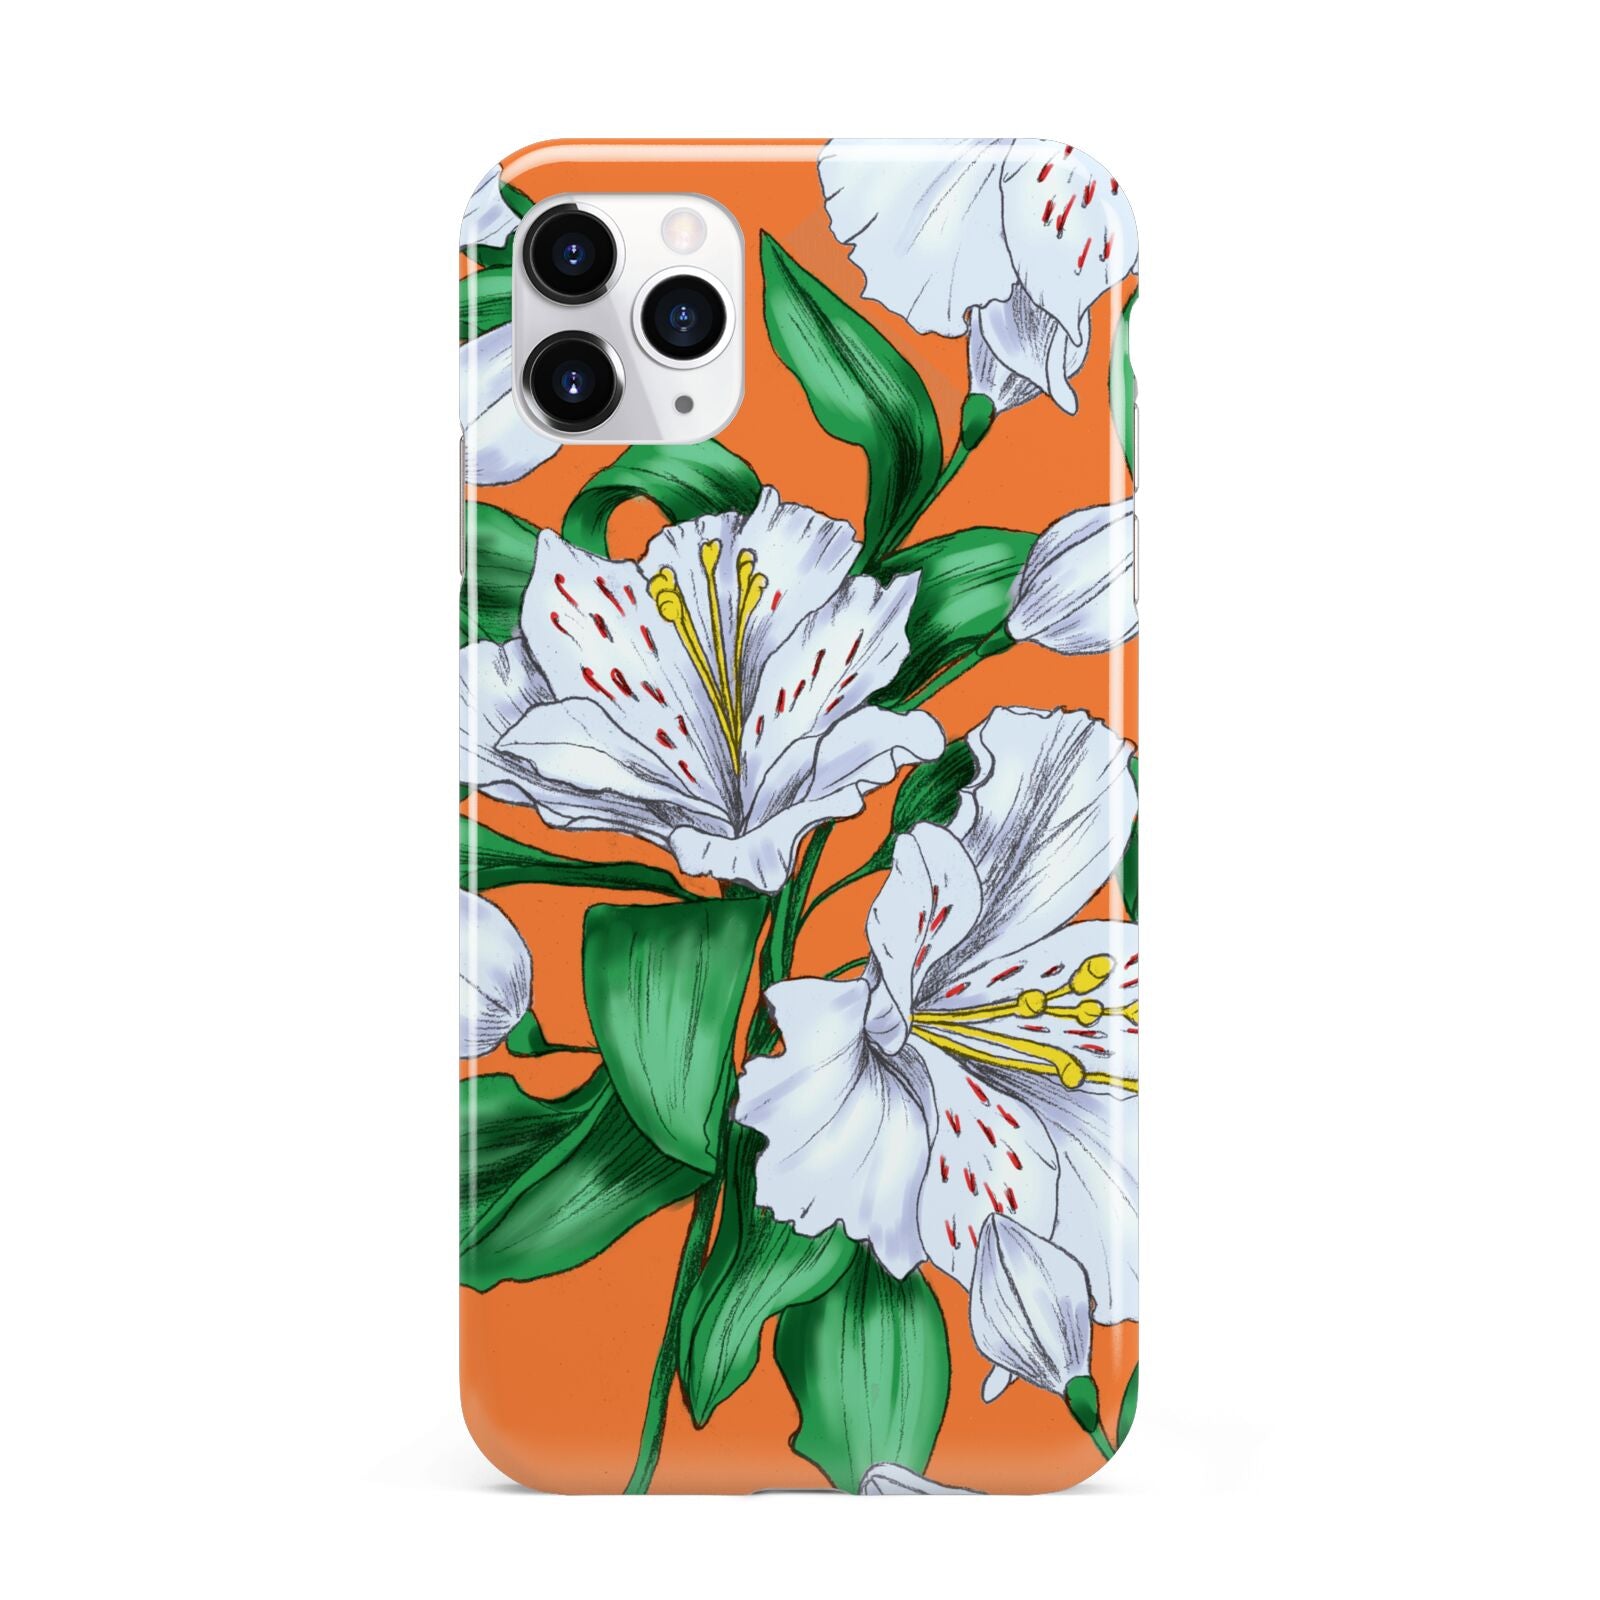 Lily iPhone 11 Pro Max 3D Tough Case